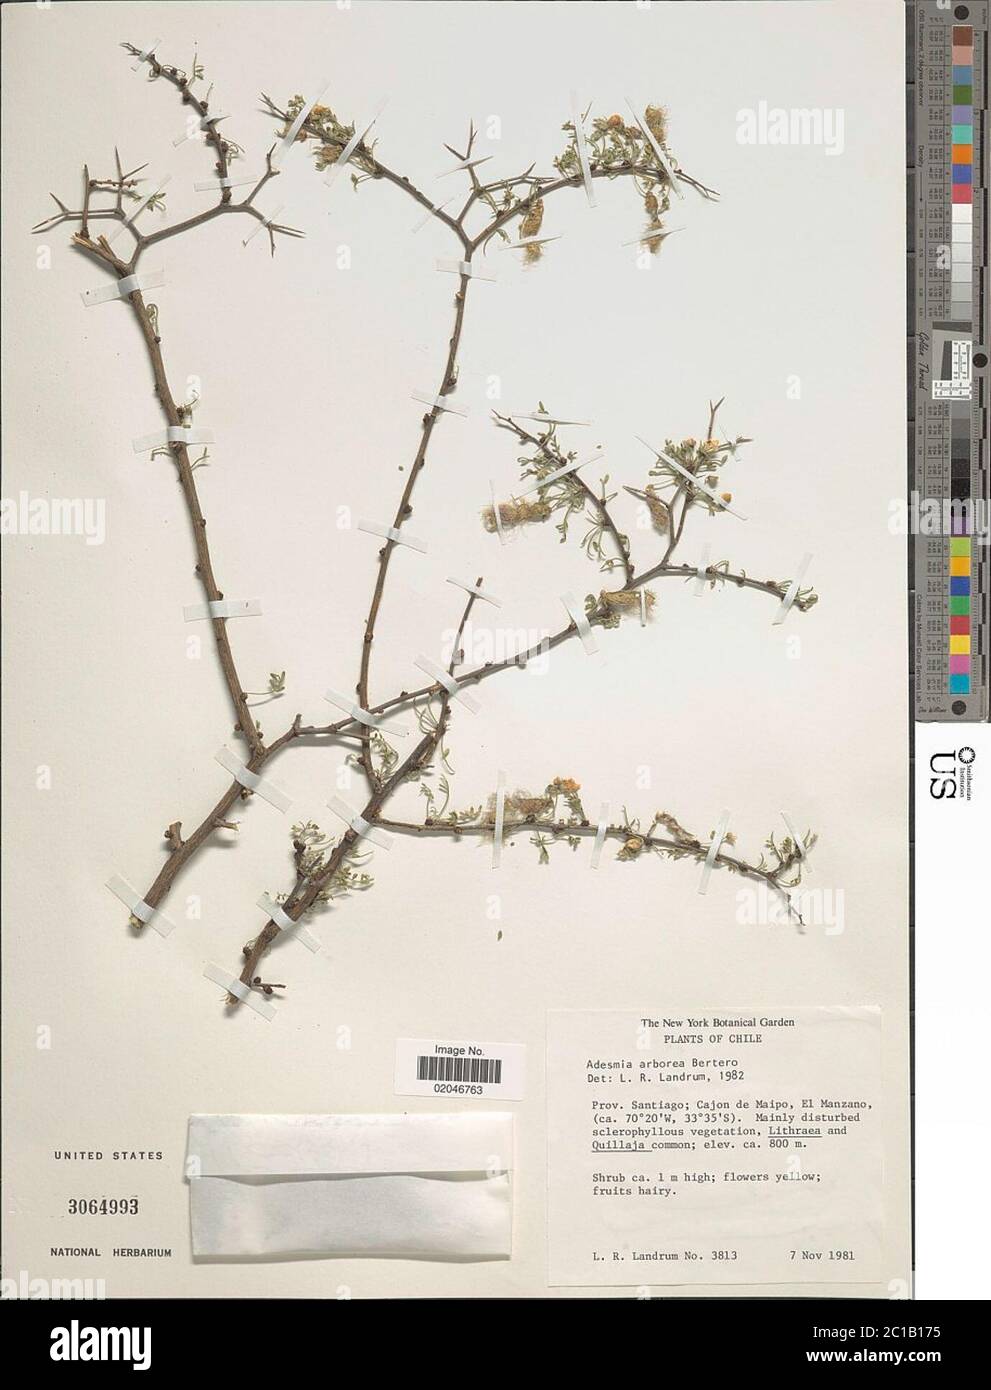 Adesmia arborea Adesmia arborea. Stock Photo